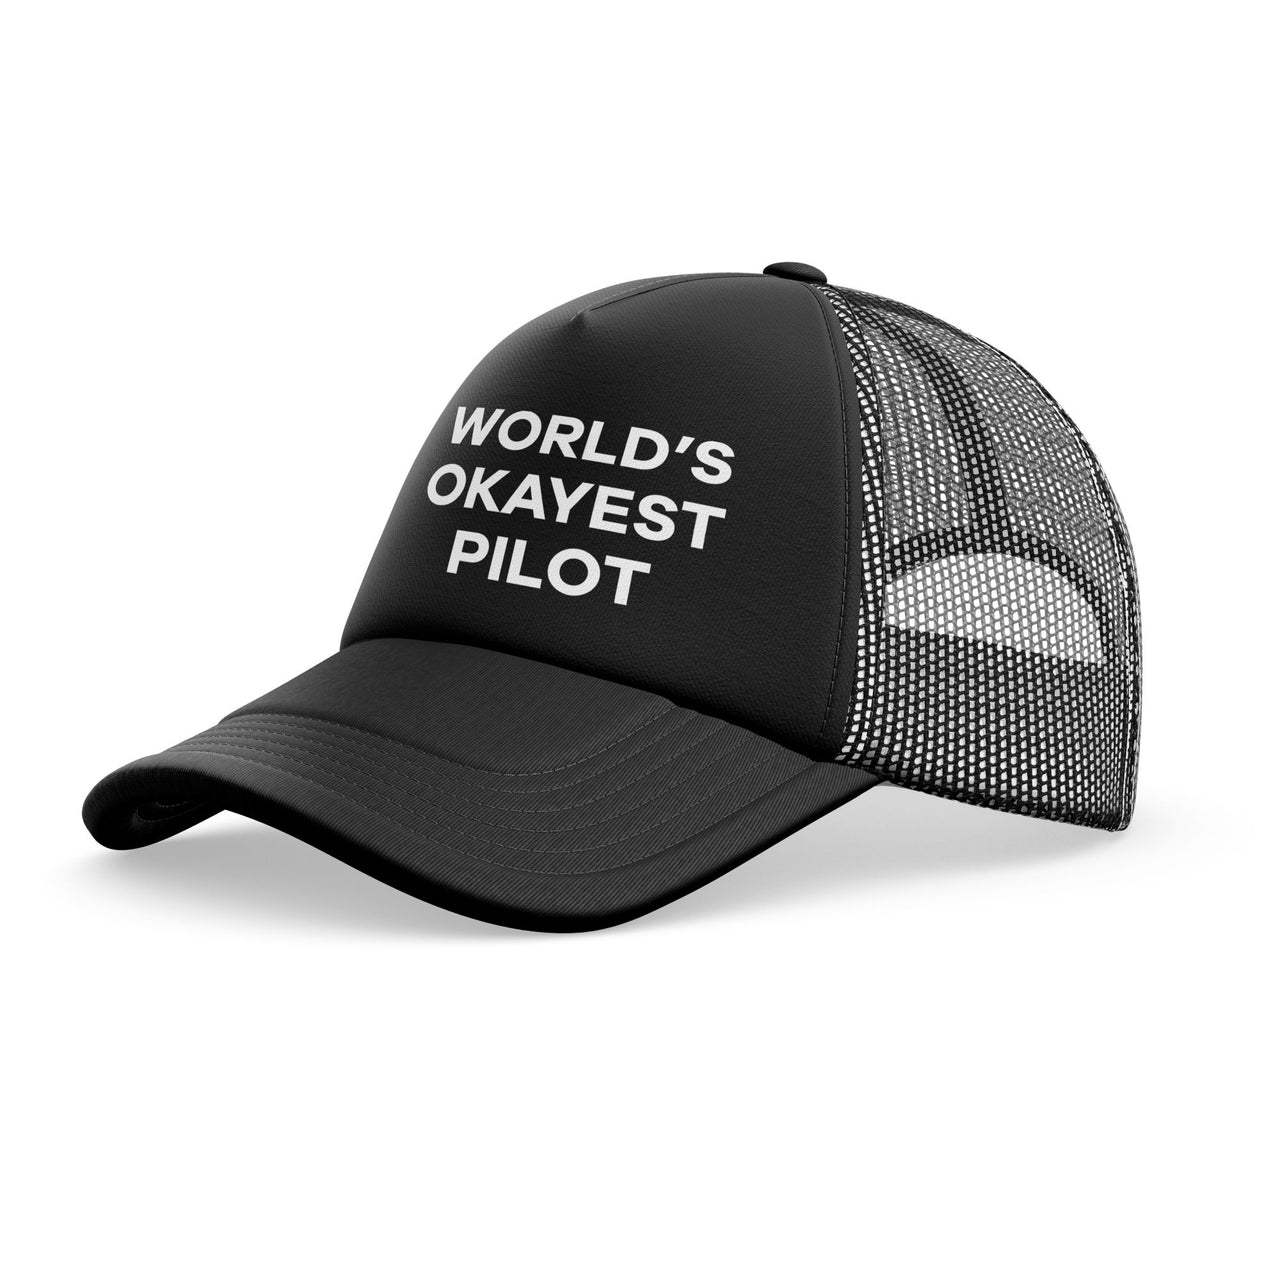 World's Okayest Pilot Designed Trucker Caps & Hats